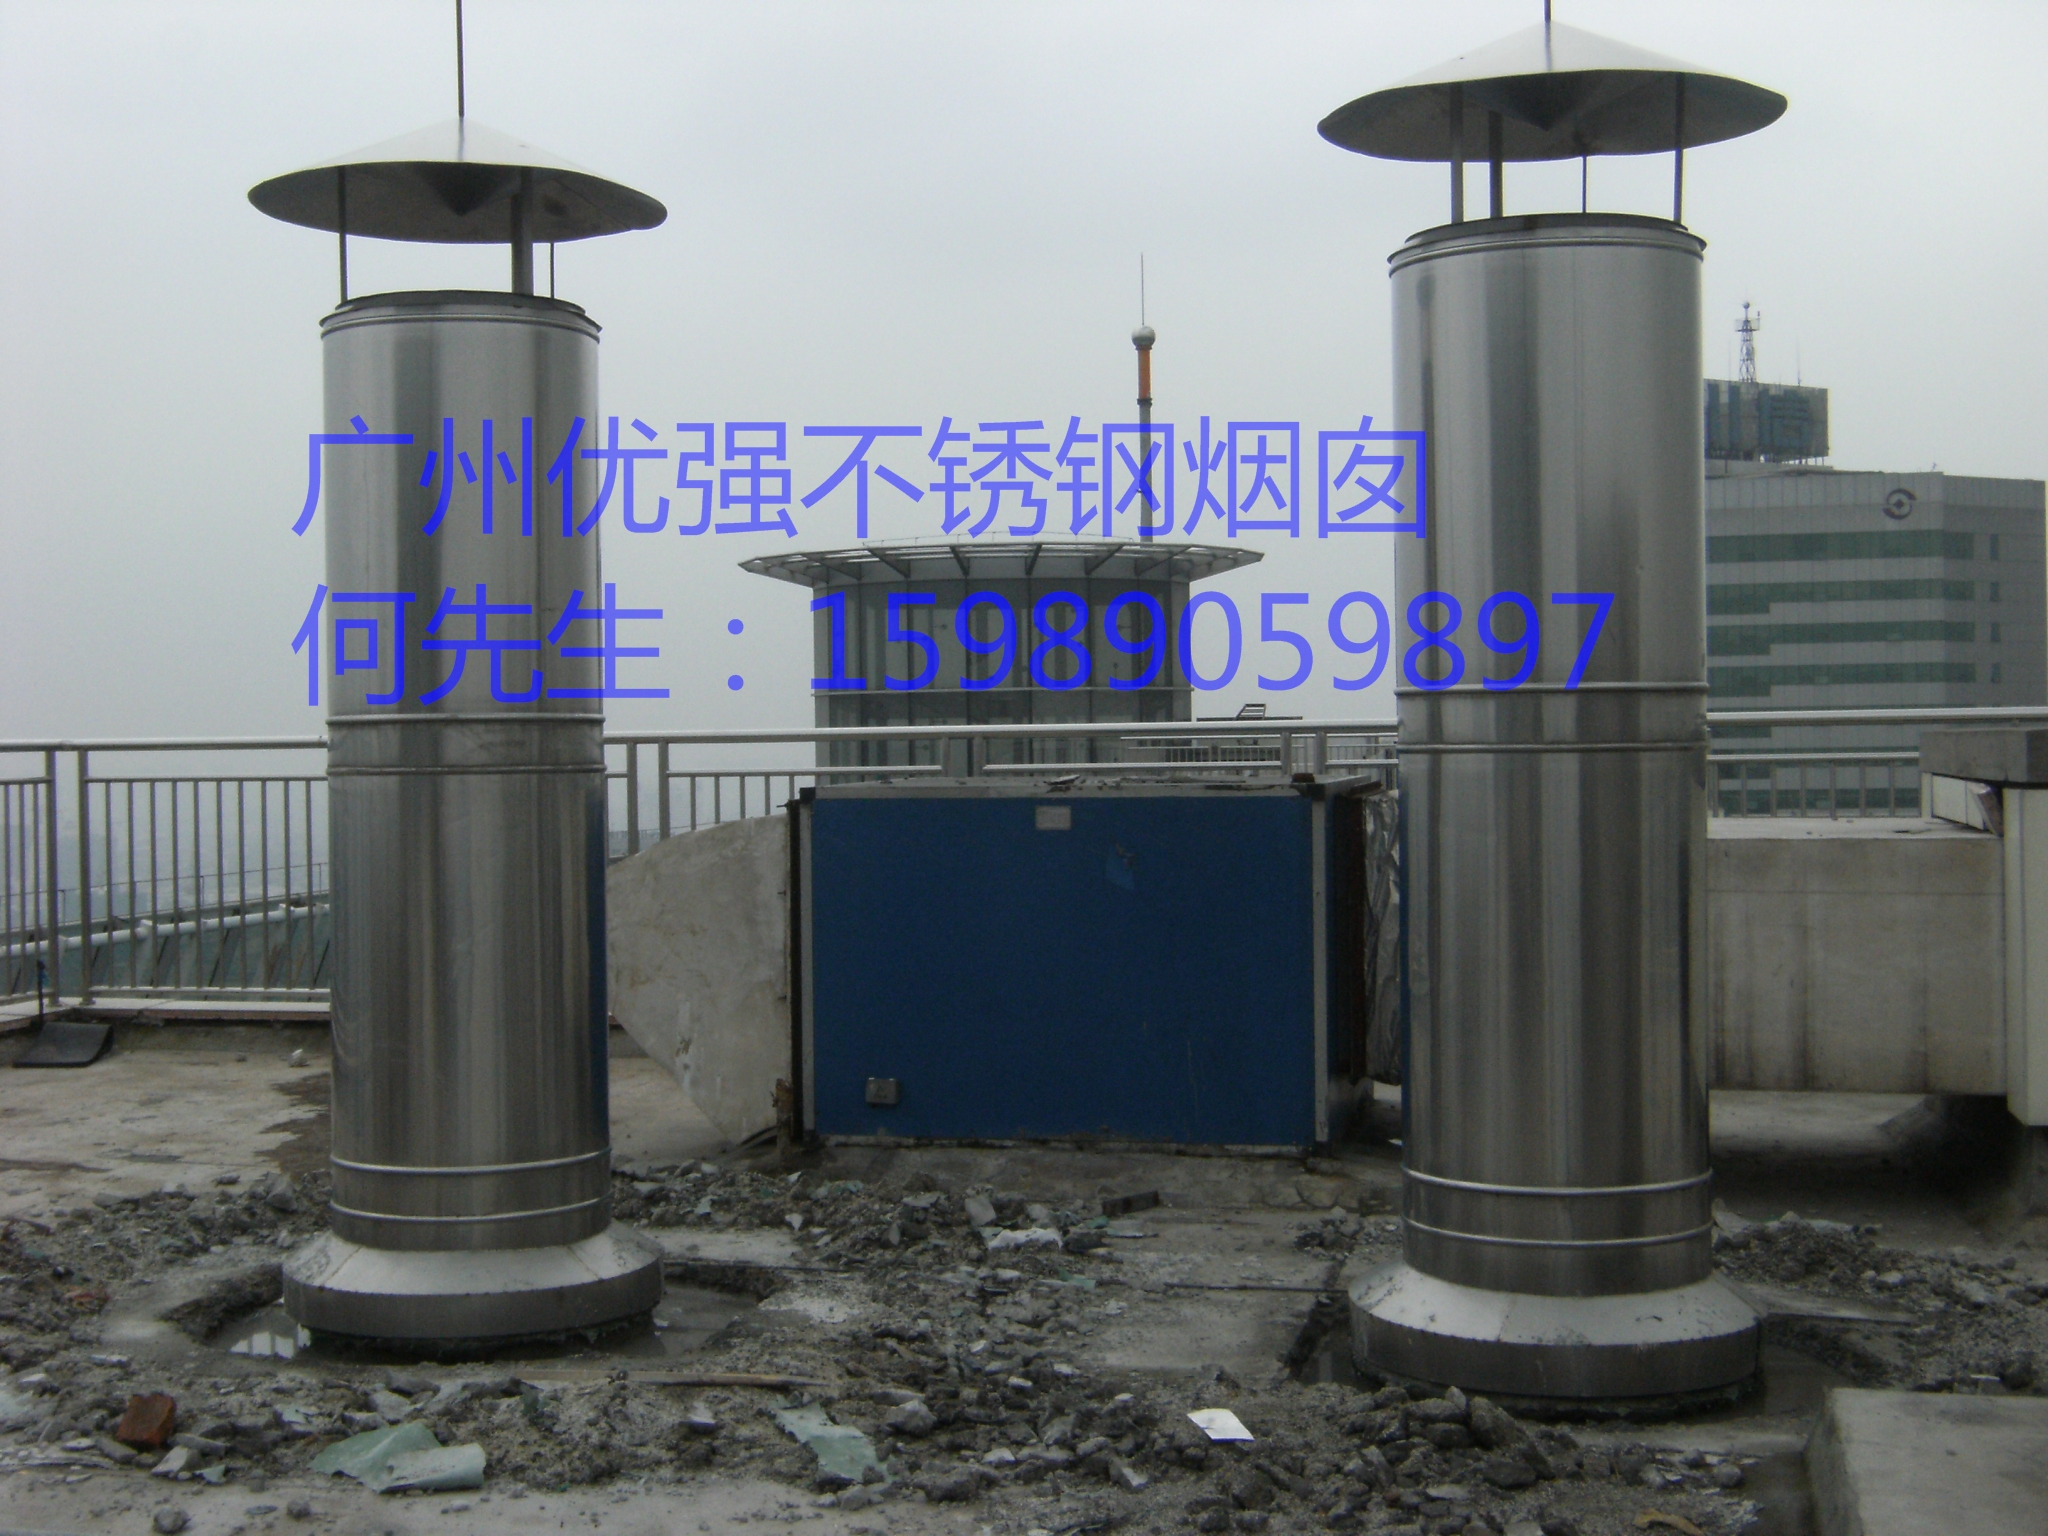 广州锅炉不锈钢烟囱厂家供应广州锅炉不锈钢烟囱